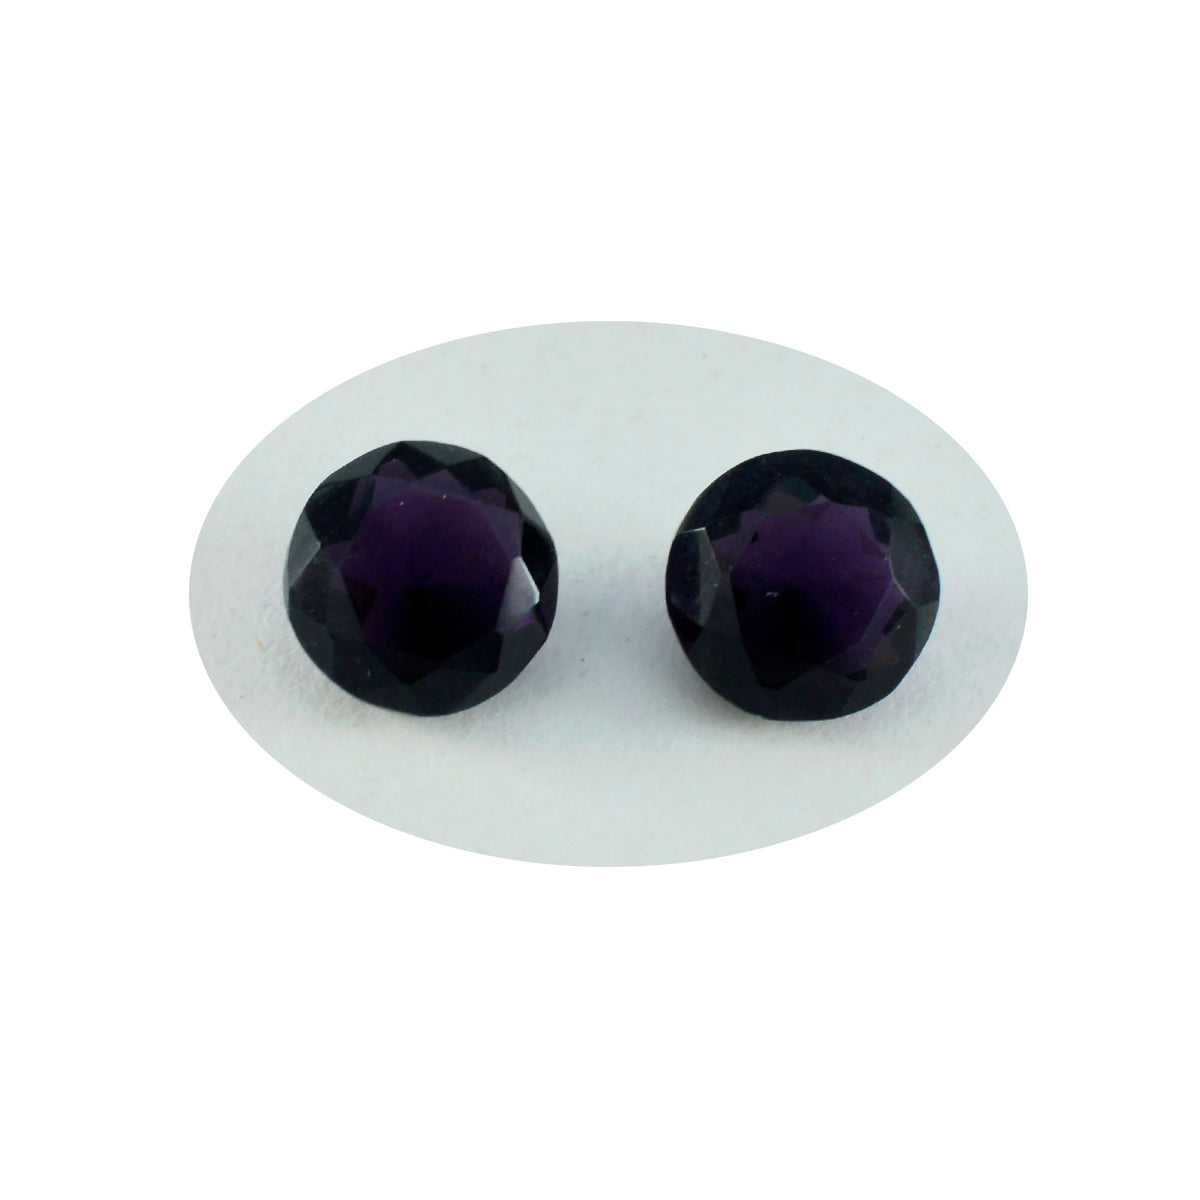 riyogems 1шт фиолетовый аметист cz ограненный 12x12 мм круглая форма камень удивительного качества